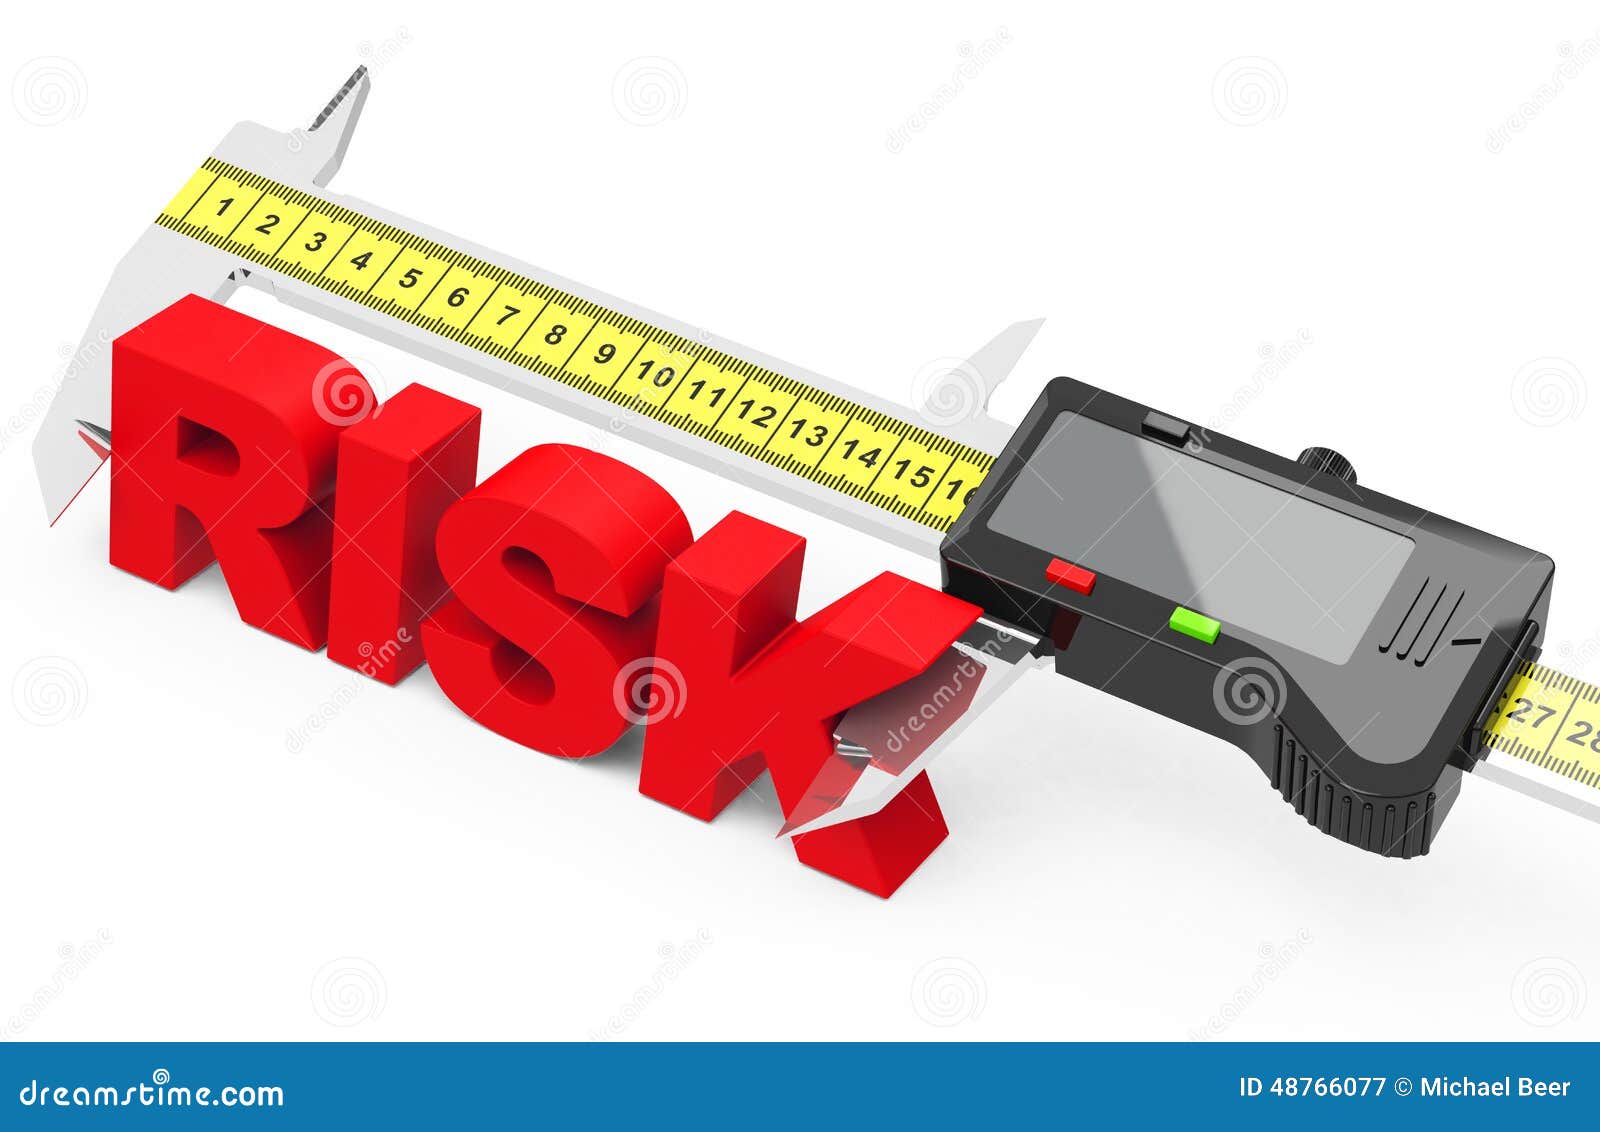 Risk management stock illustration. Illustration of safety - 48766077